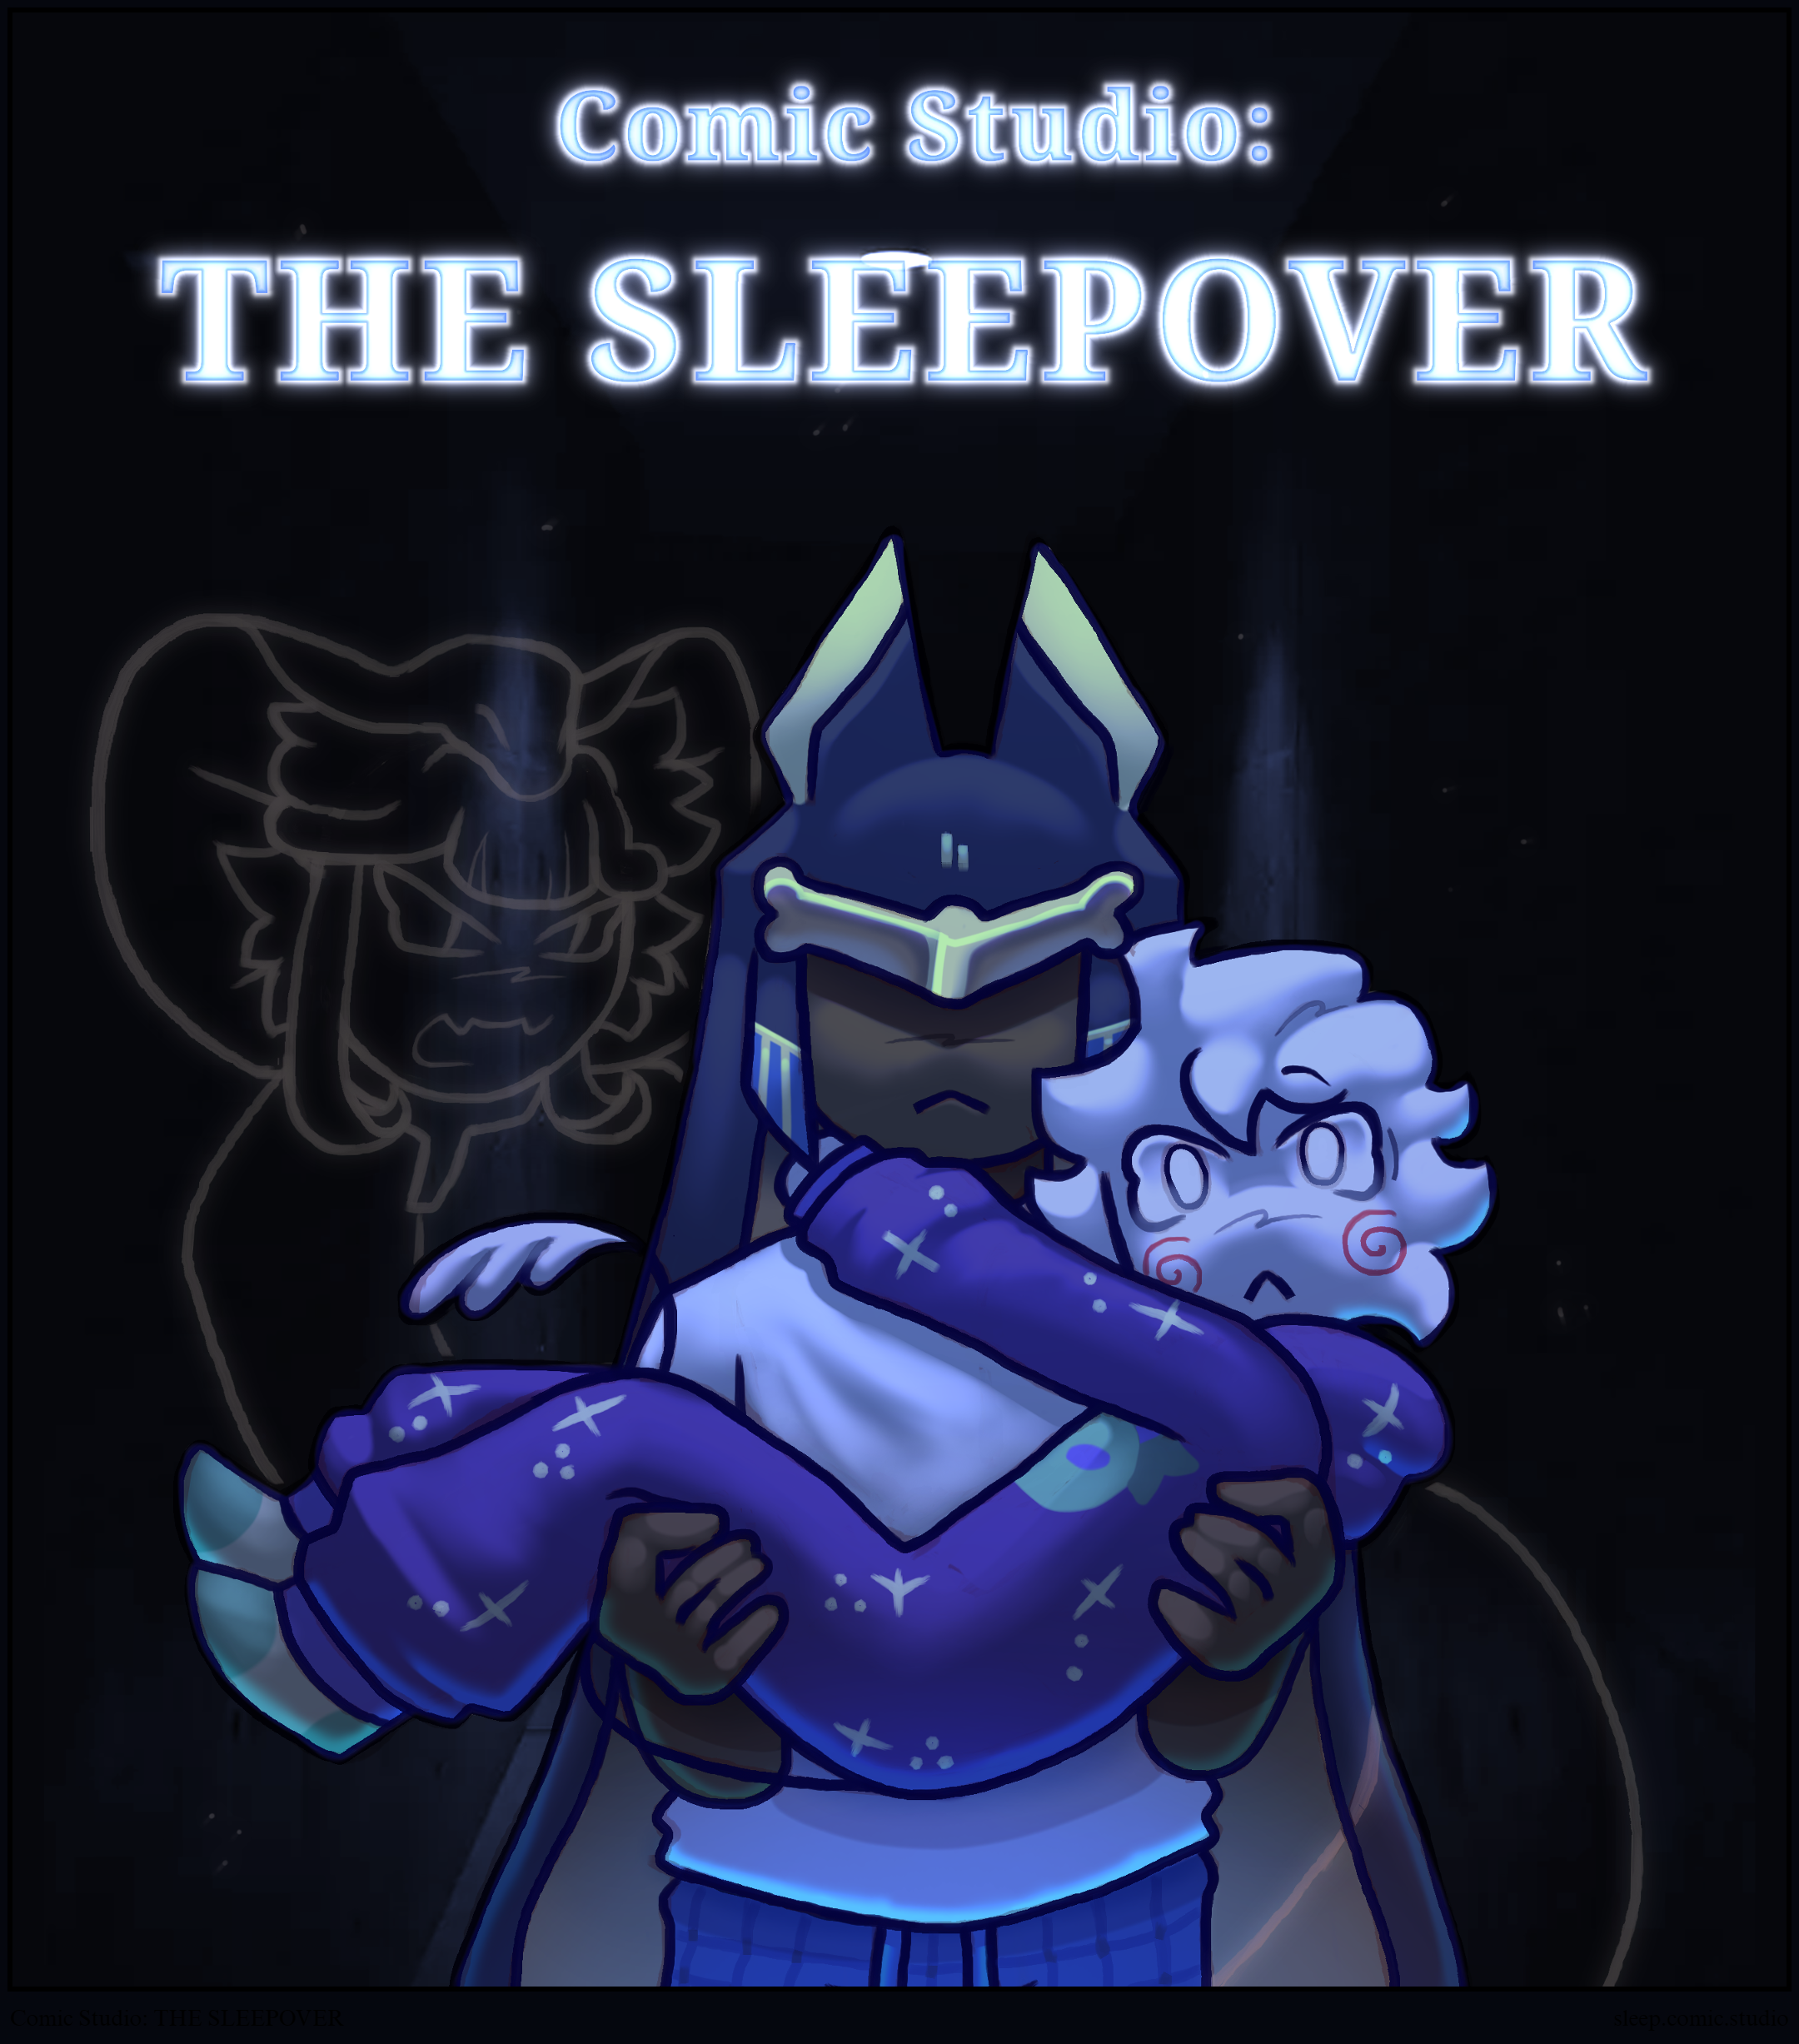 Comic Studio: THE SLEEPOVER